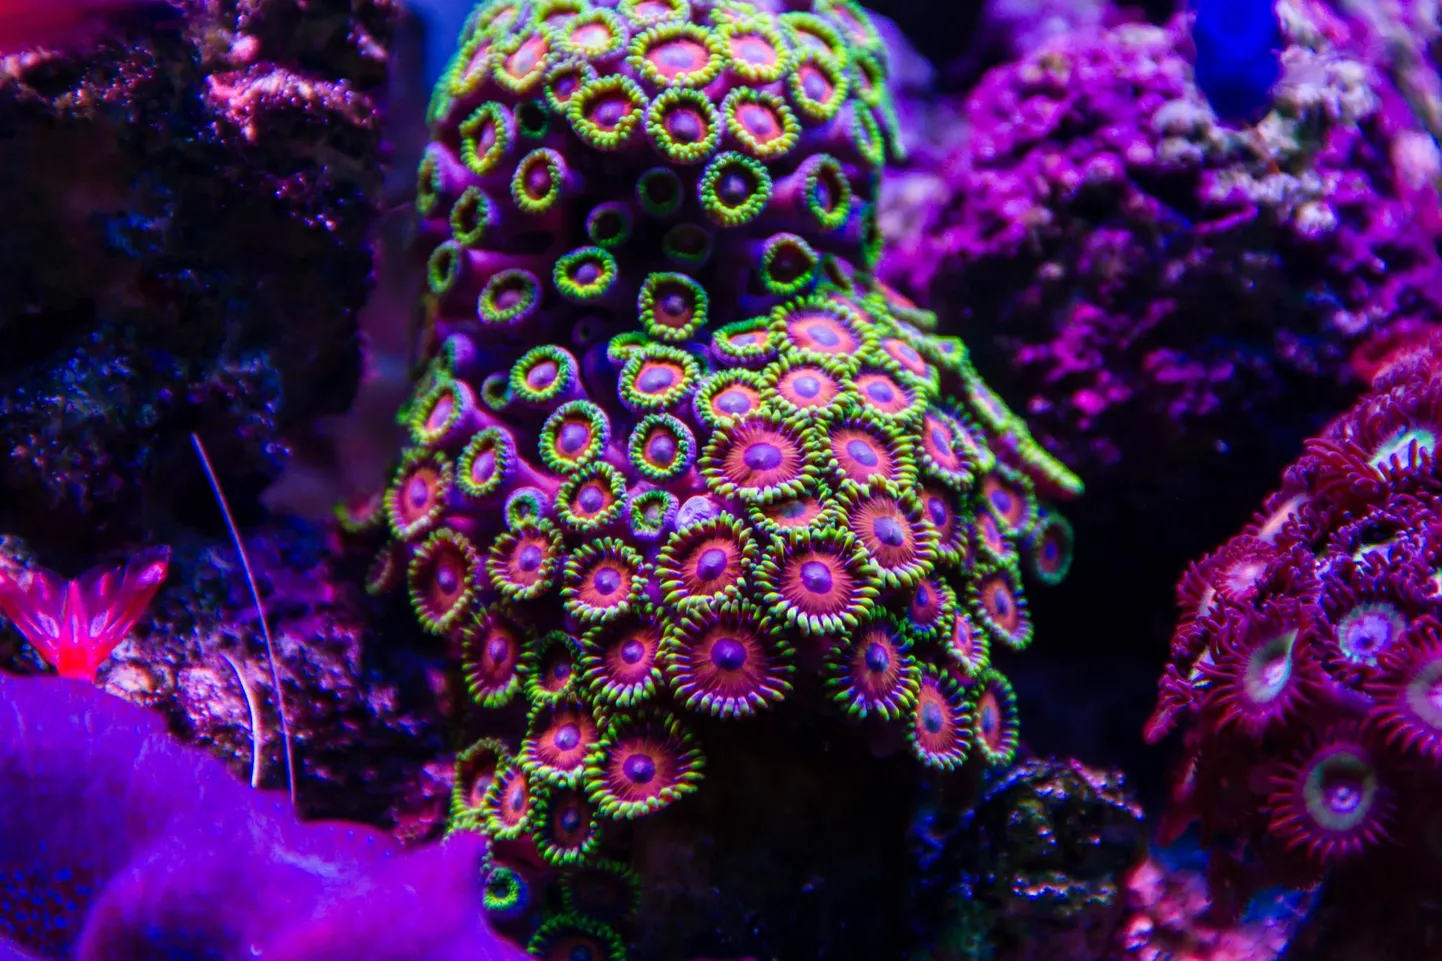 Palythoa-koralli näol tegemist on pehmete polüüpide kolooniaga, mis elavad kivide peal ja on väikese seene kujulised.